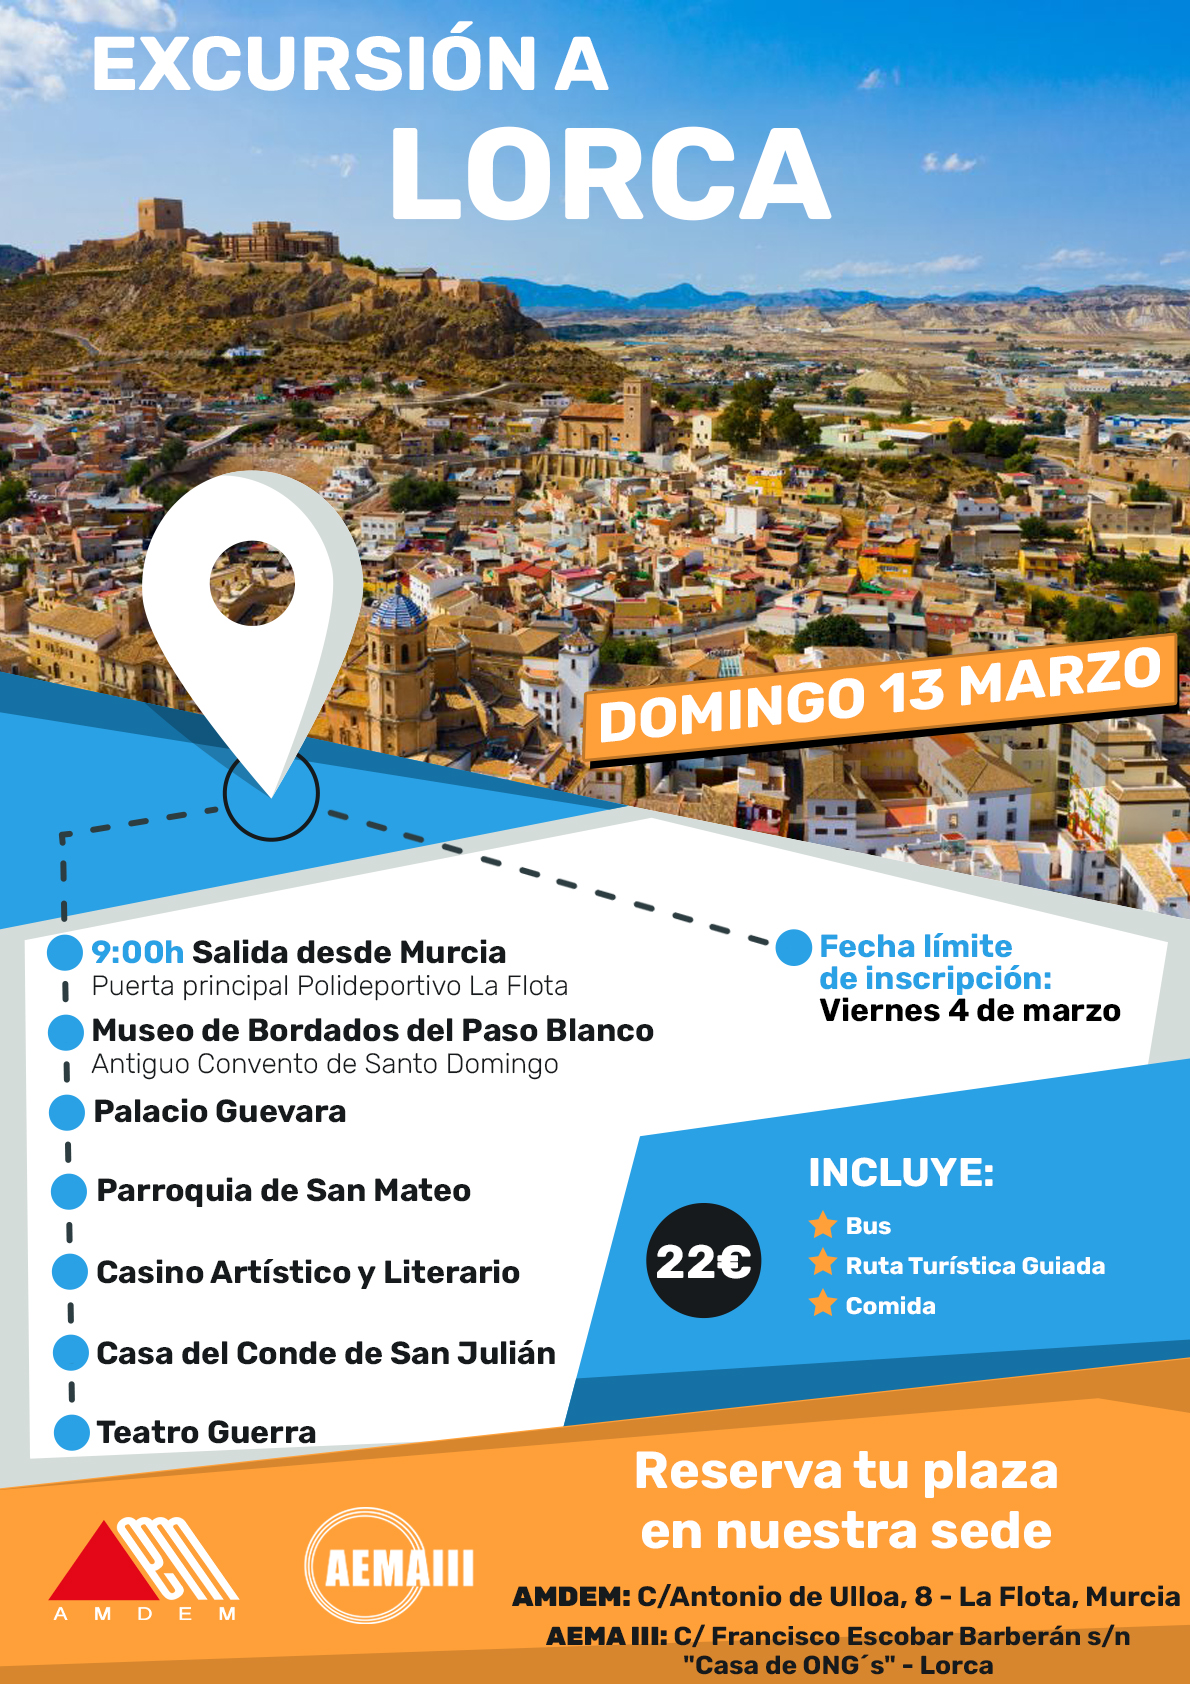 Excursión a Lorca – ¡Acompáñanos a conocer la Ciudad del Sol!